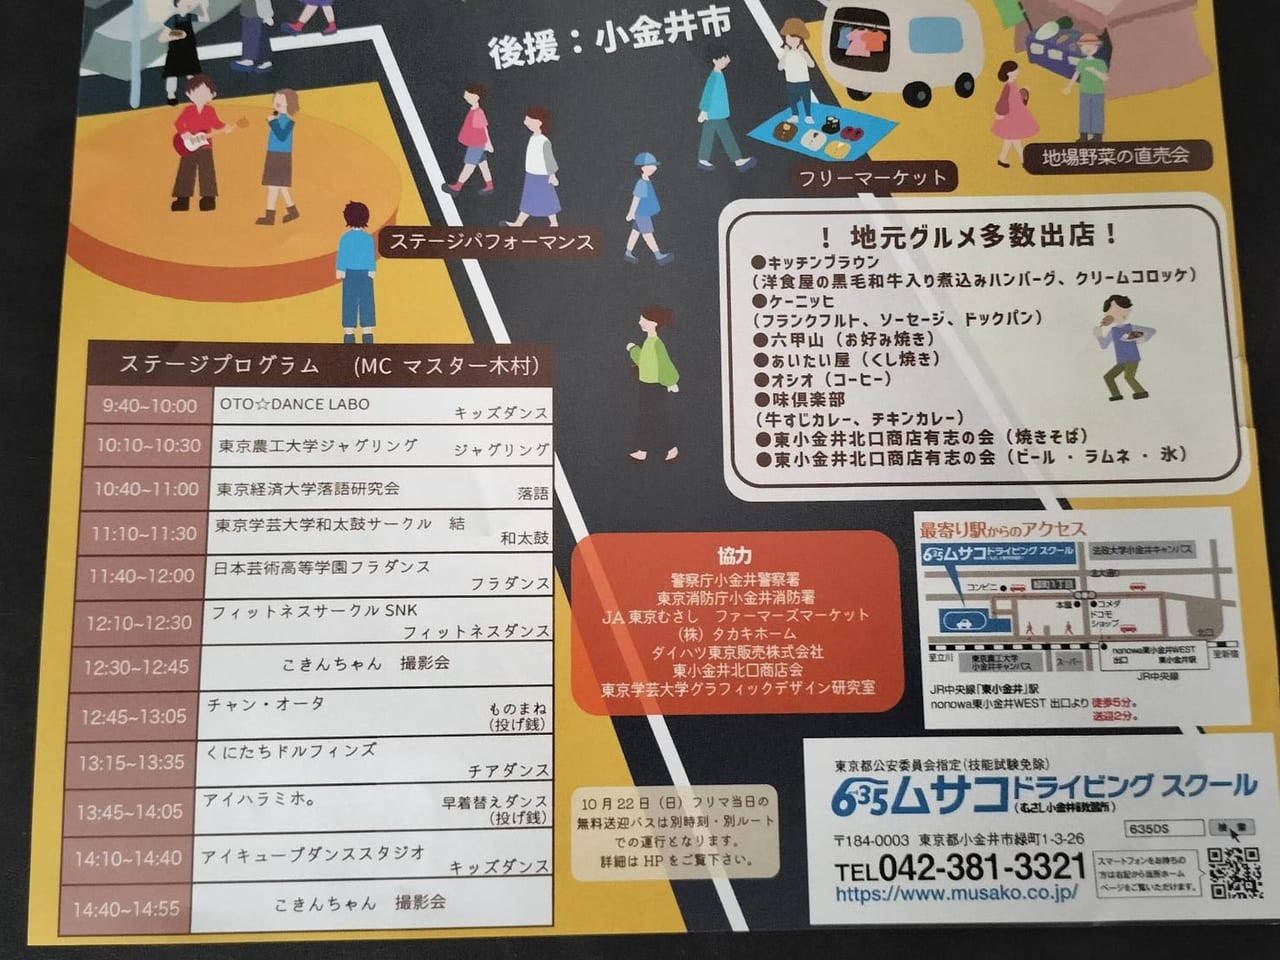 武蔵小金井自動車教習所のフリーマーケットで行われるイベントスケジュール